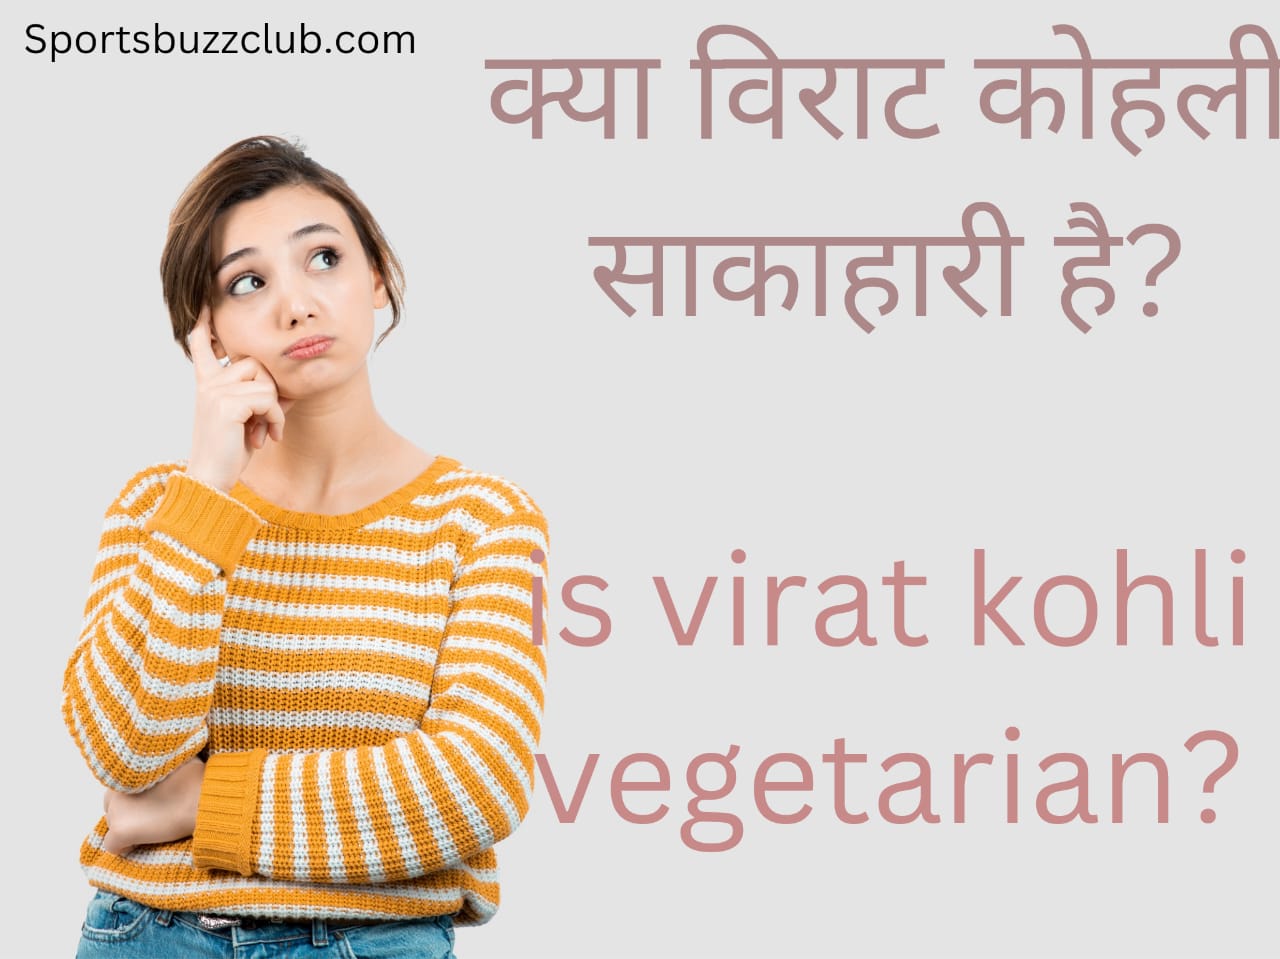 क्या विराट कोहली सकाहारी है: is Virat Kohli vegetarian